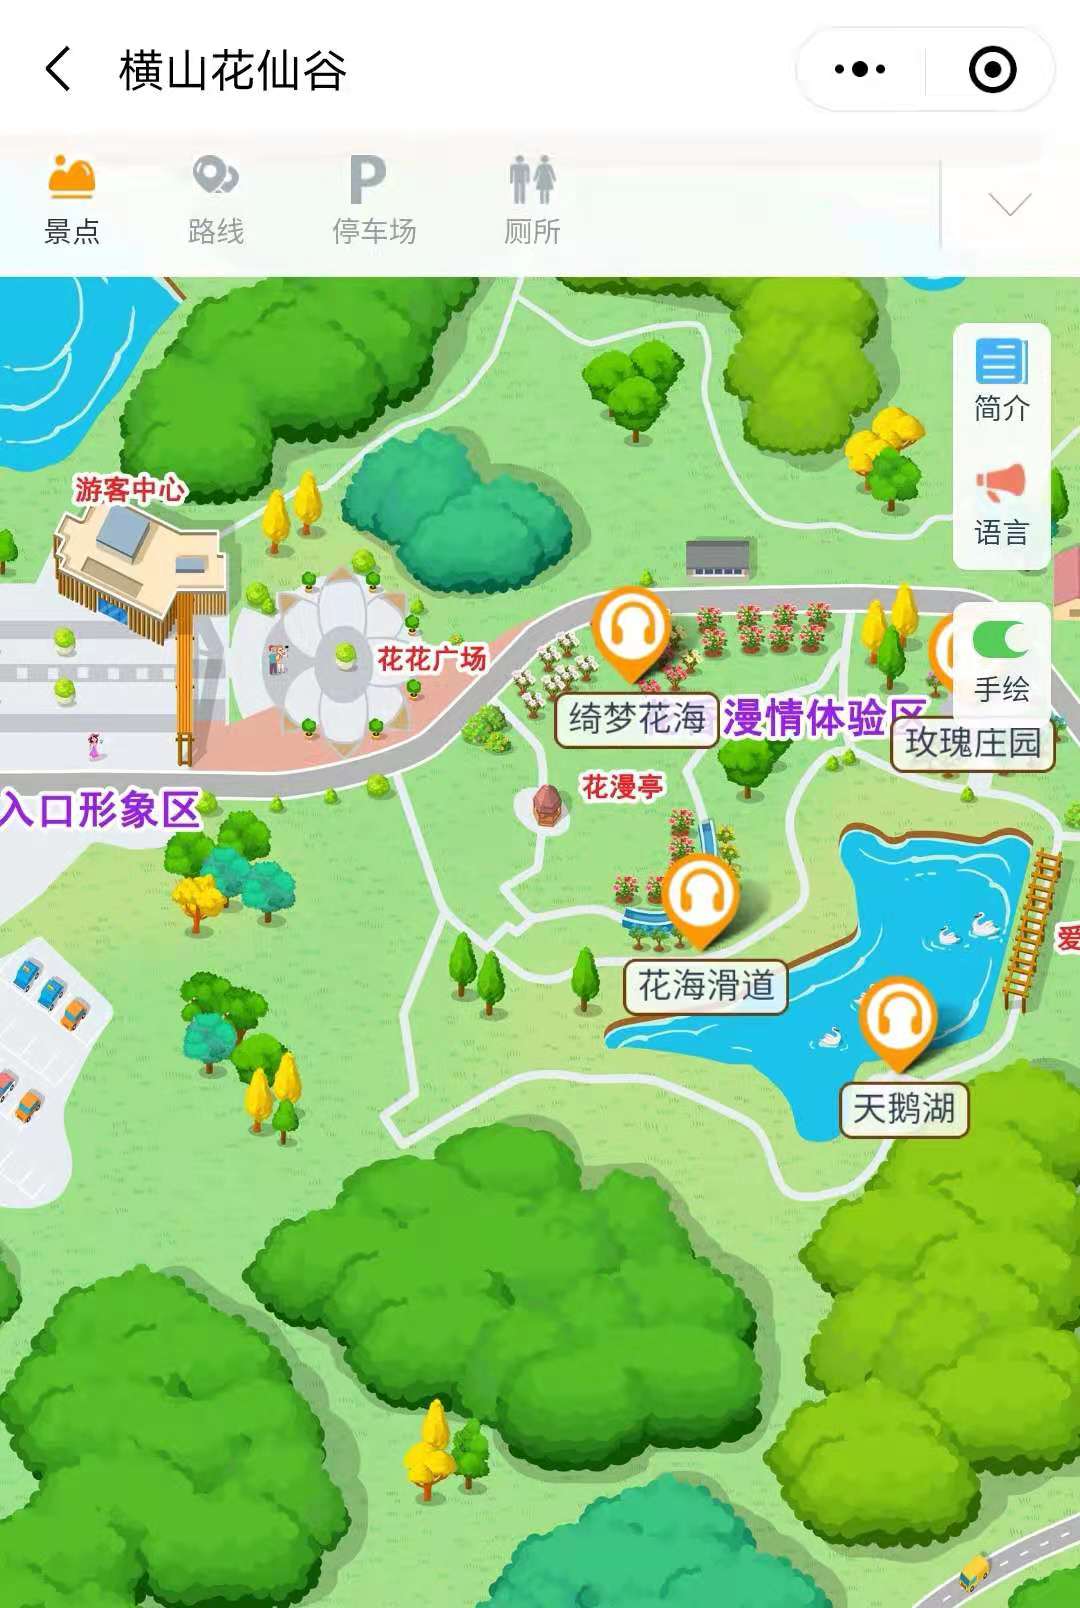 2021横山花仙谷景区手绘地图，电子导览，语音讲解系统上线.jpg